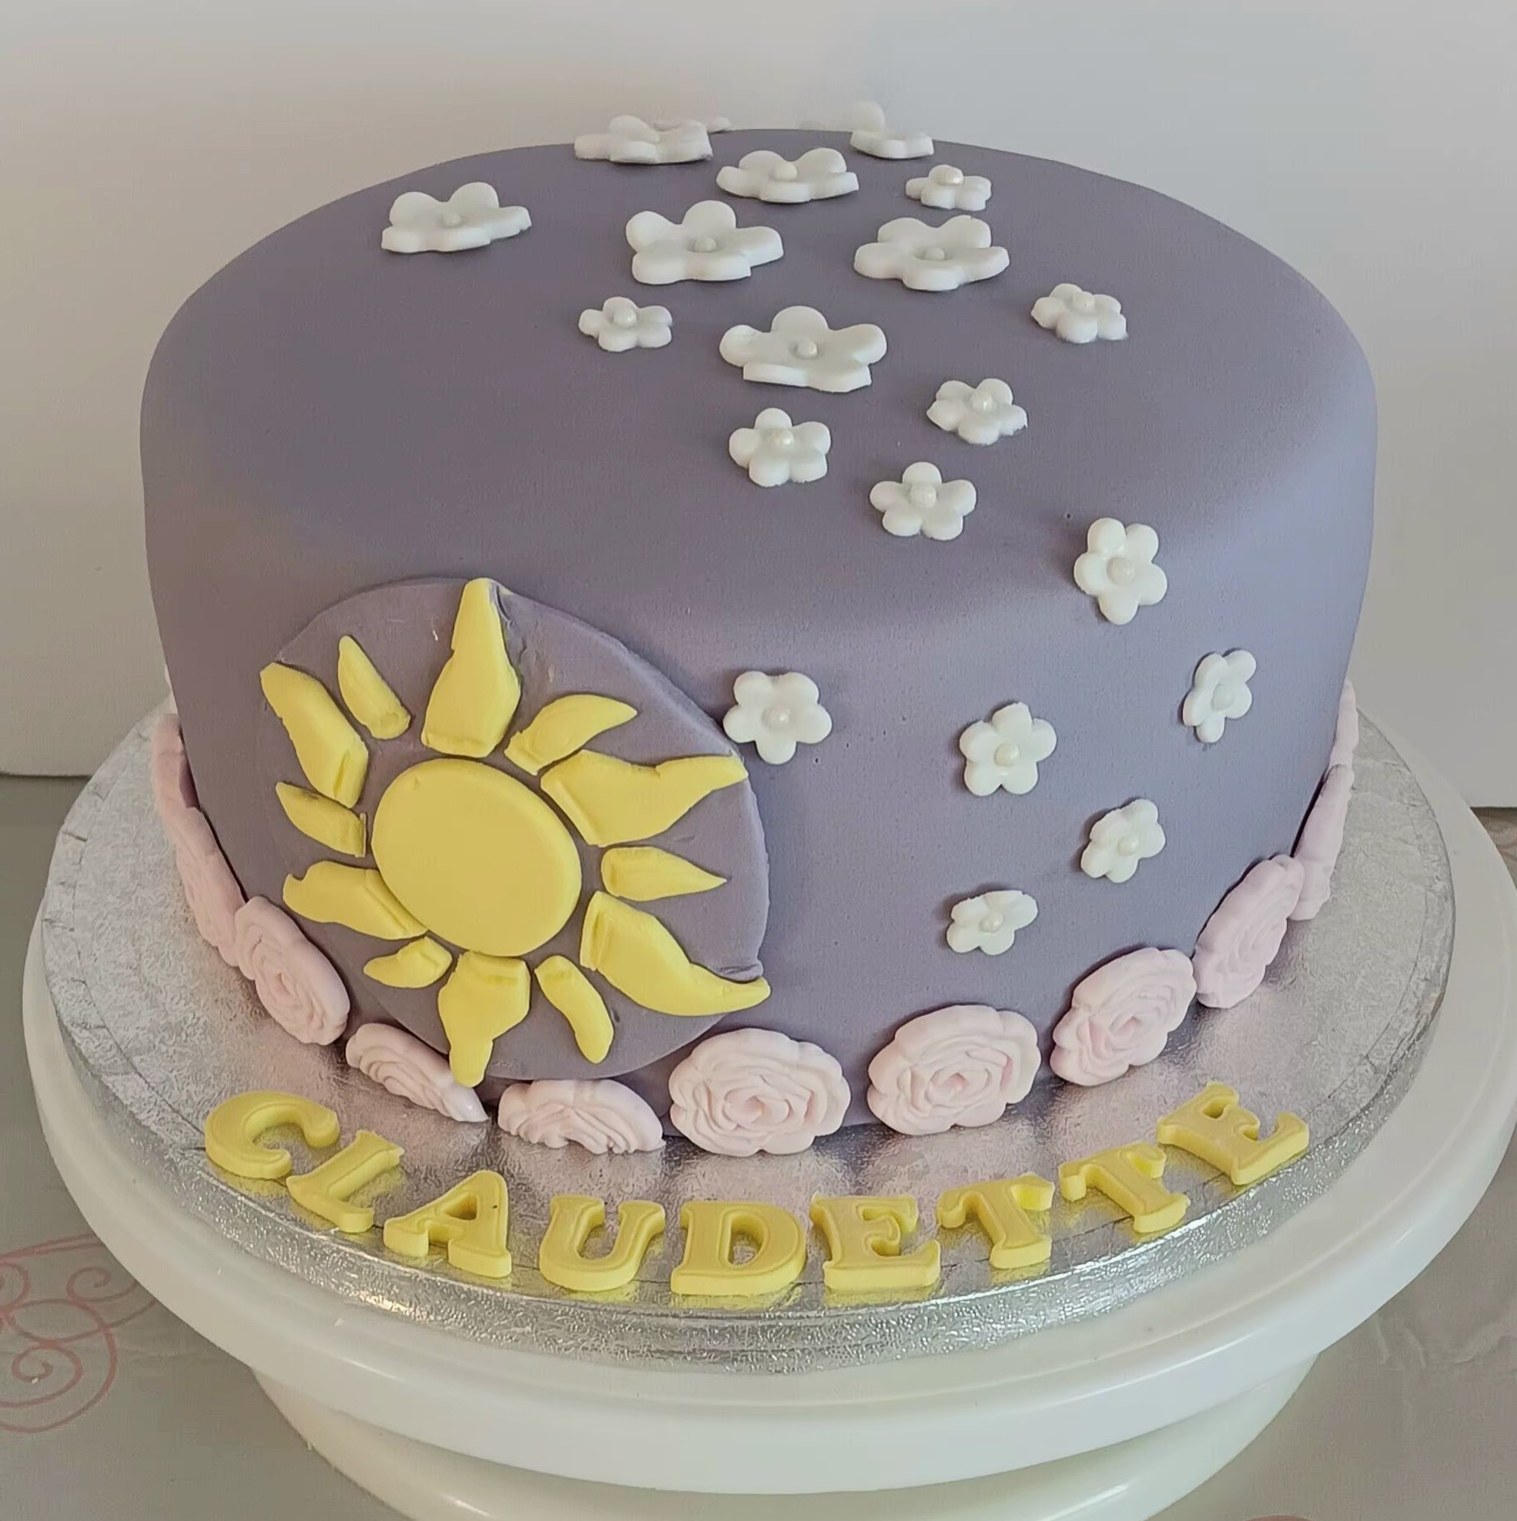 ladies "Sunshine" birthday cake